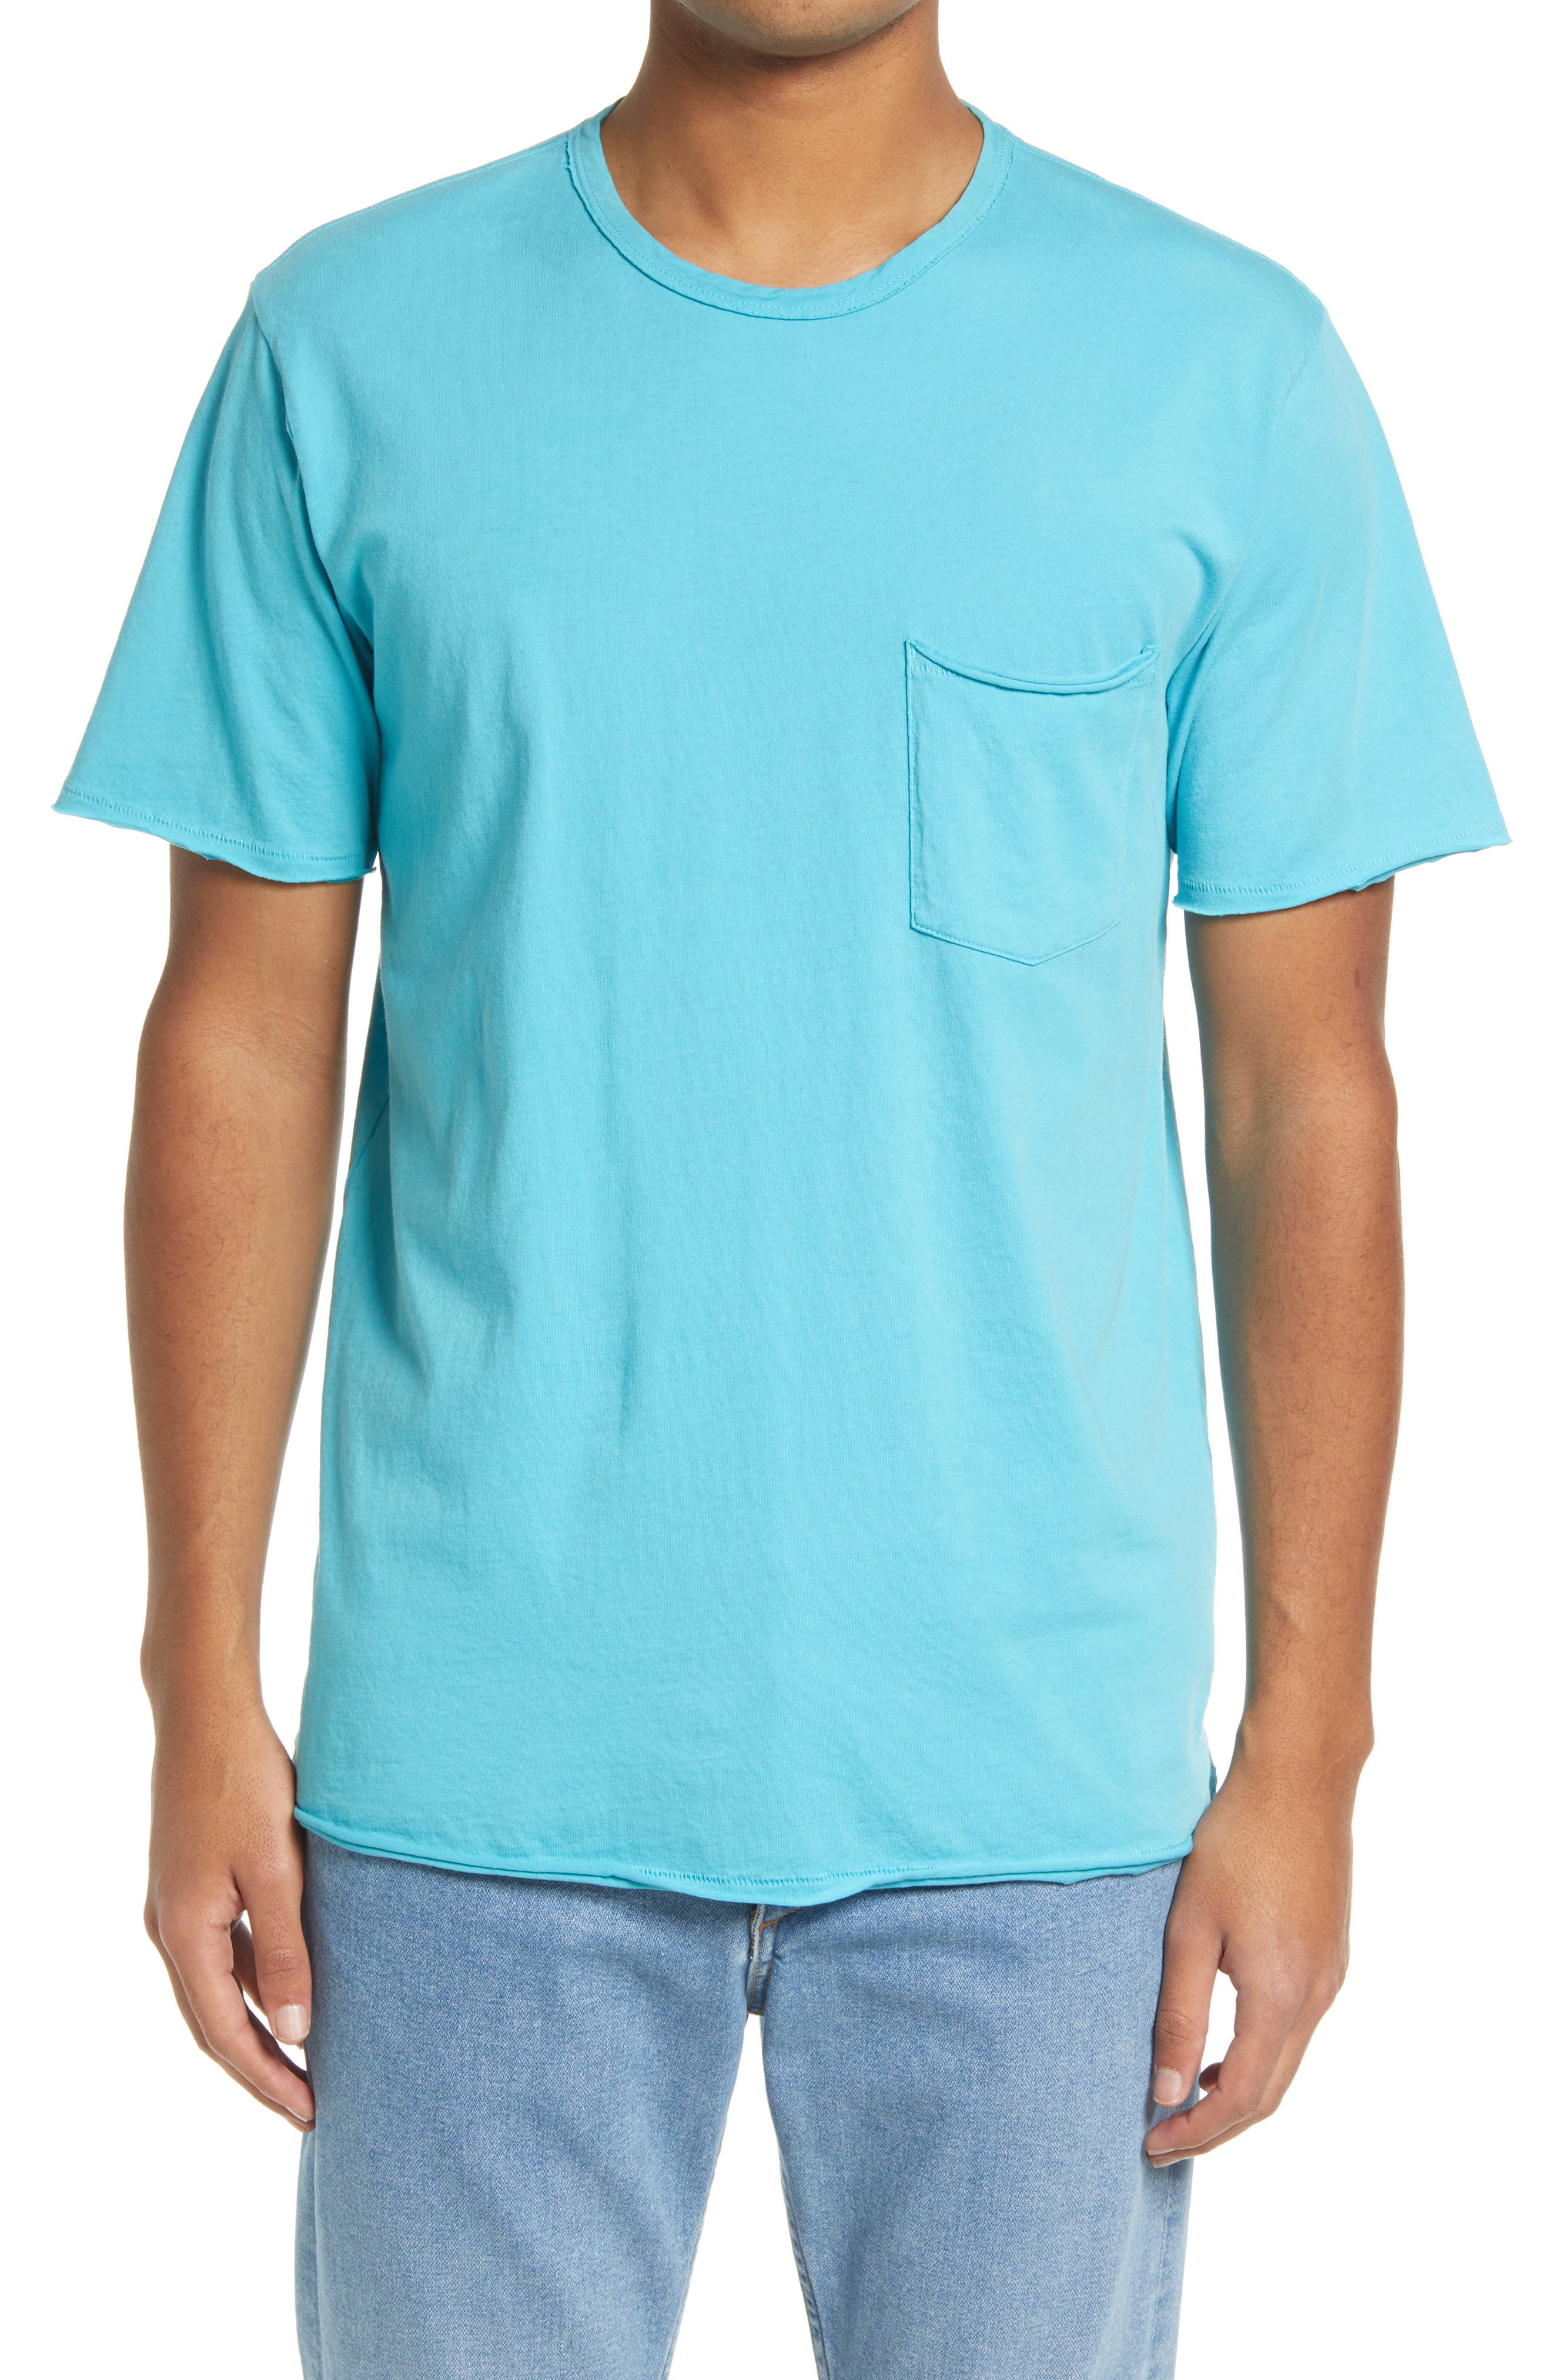 Big and tall t-shirt blue dragon design black tee shirt tall shirts for men